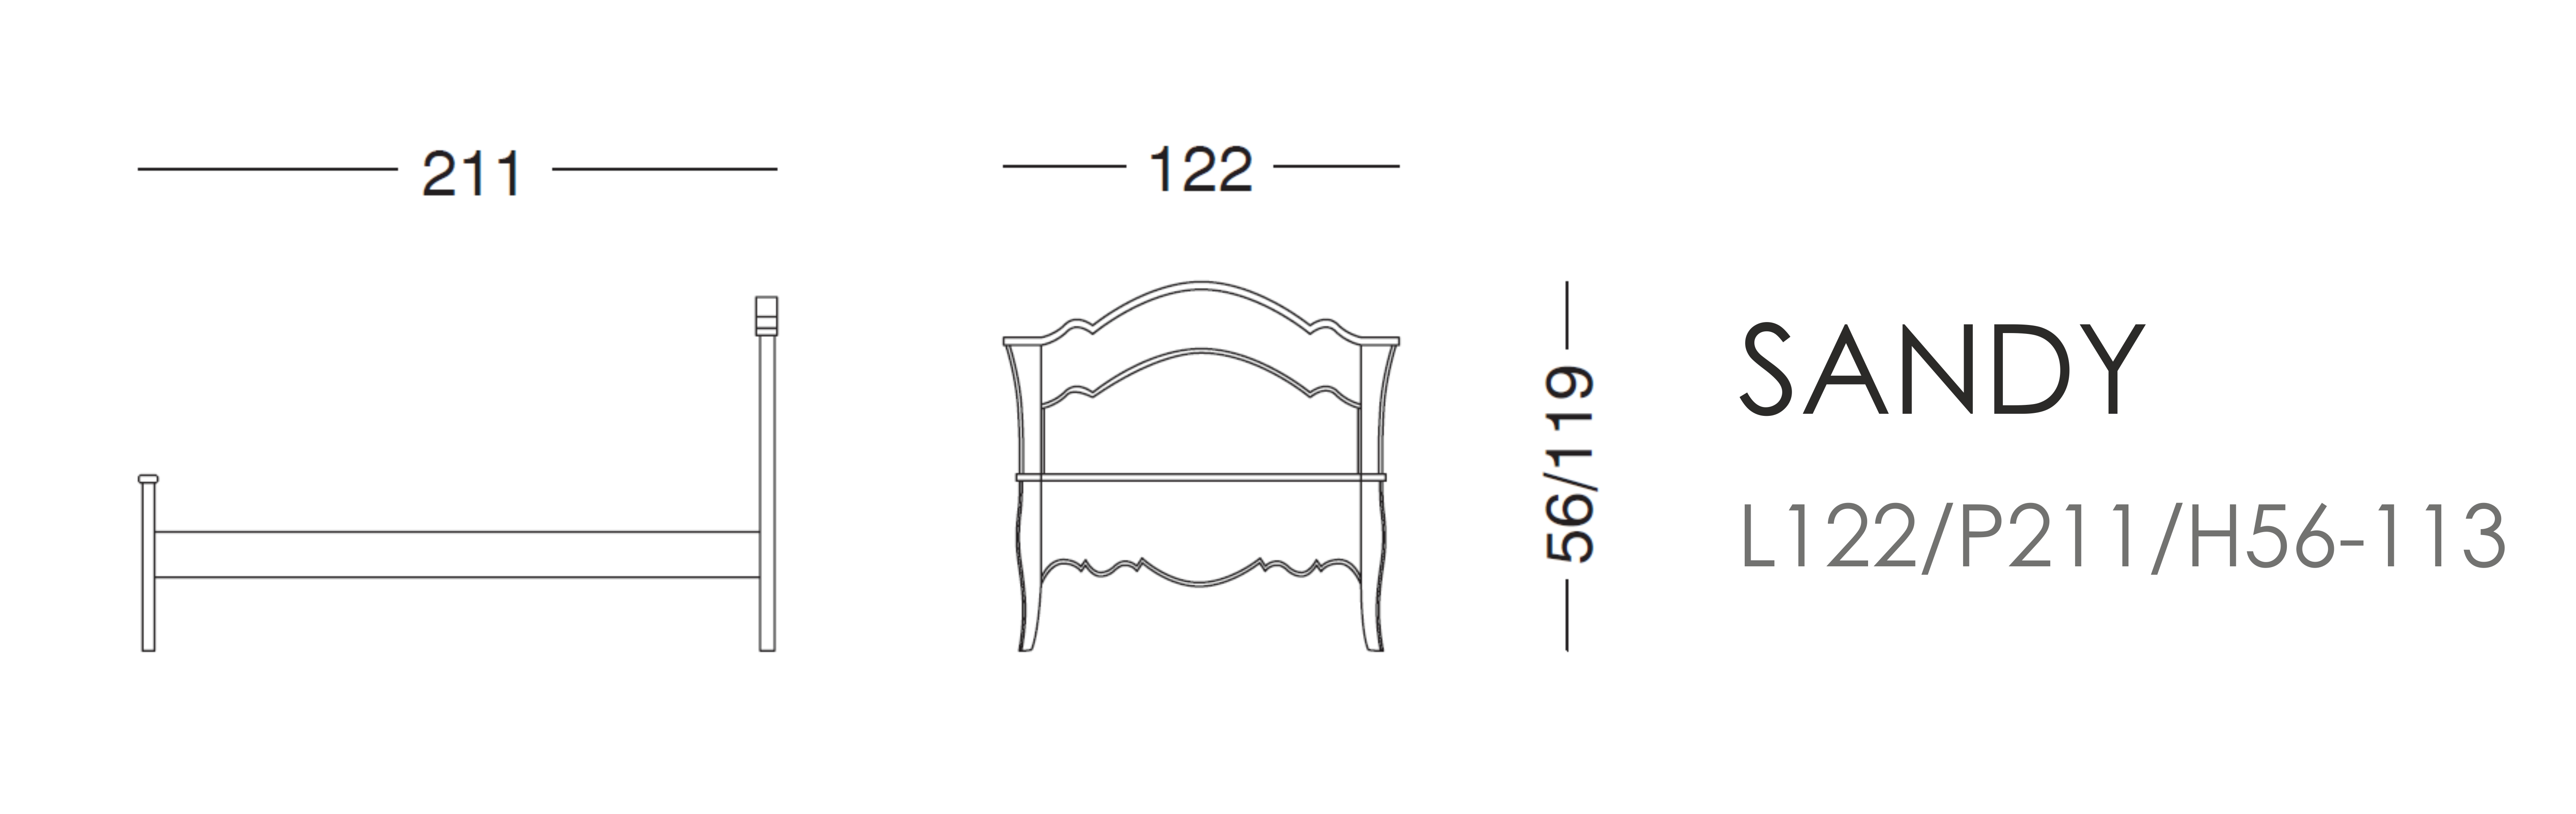 Кровать Sandy - L122/P211/H56-113